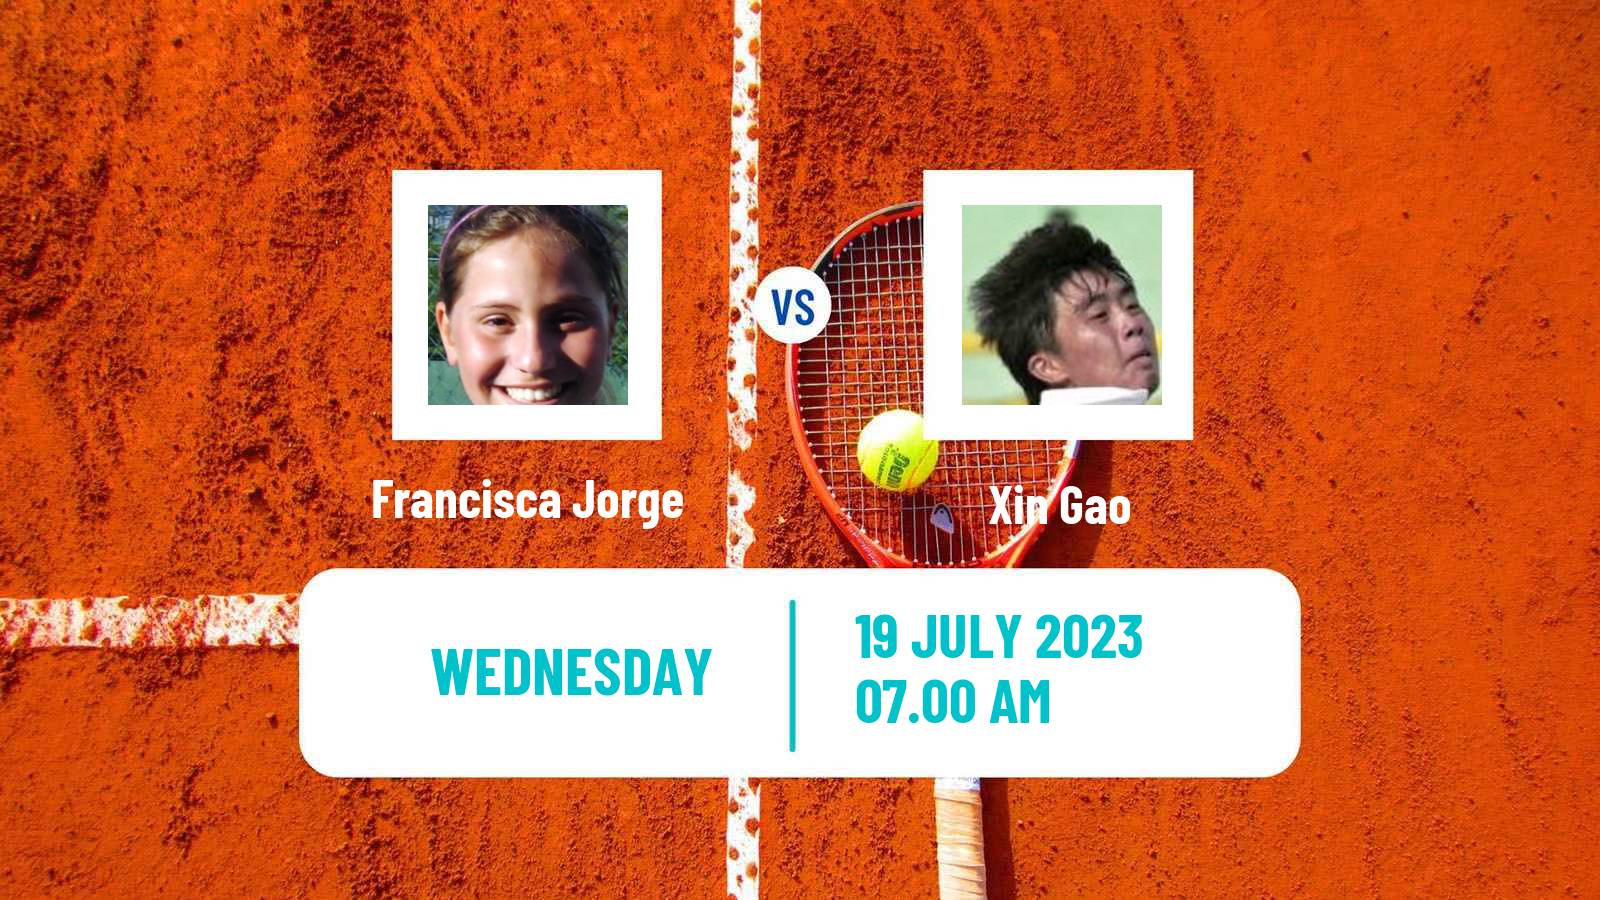 Tennis ITF W40 Porto 3 Women Francisca Jorge - Xin Gao